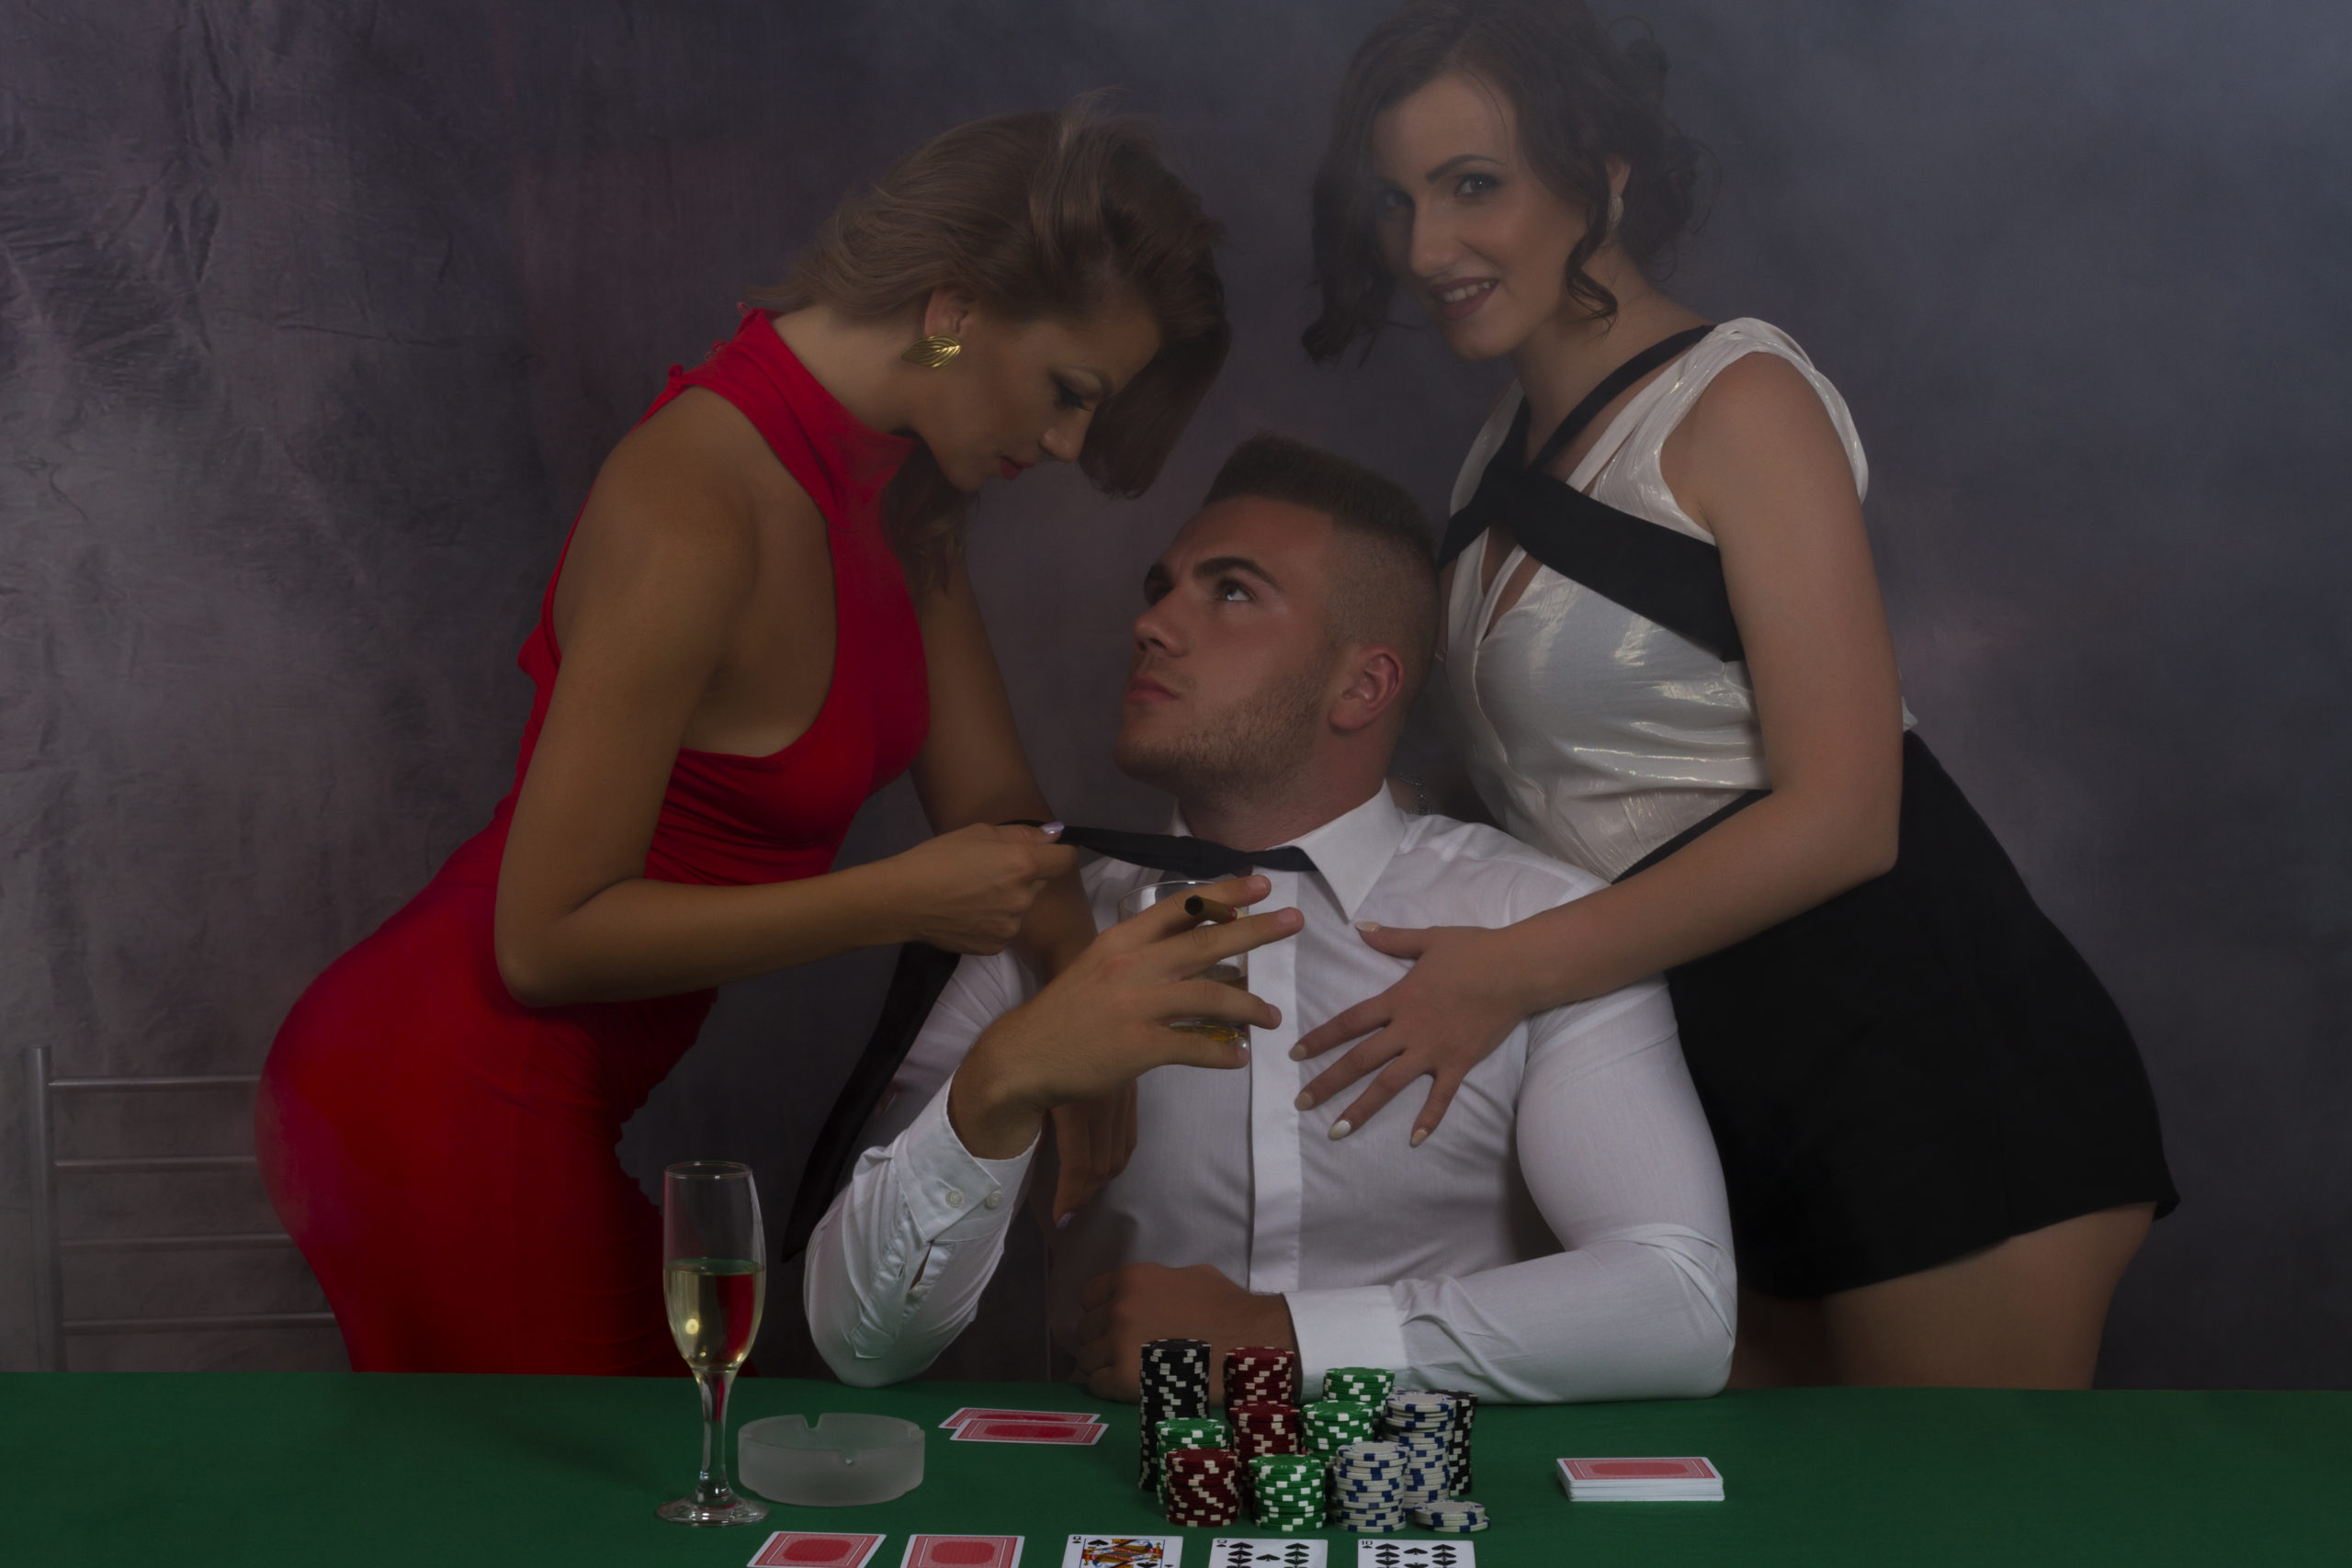 4 lekcie, ktoré vás môže naučiť profesionálny hazardný hráč